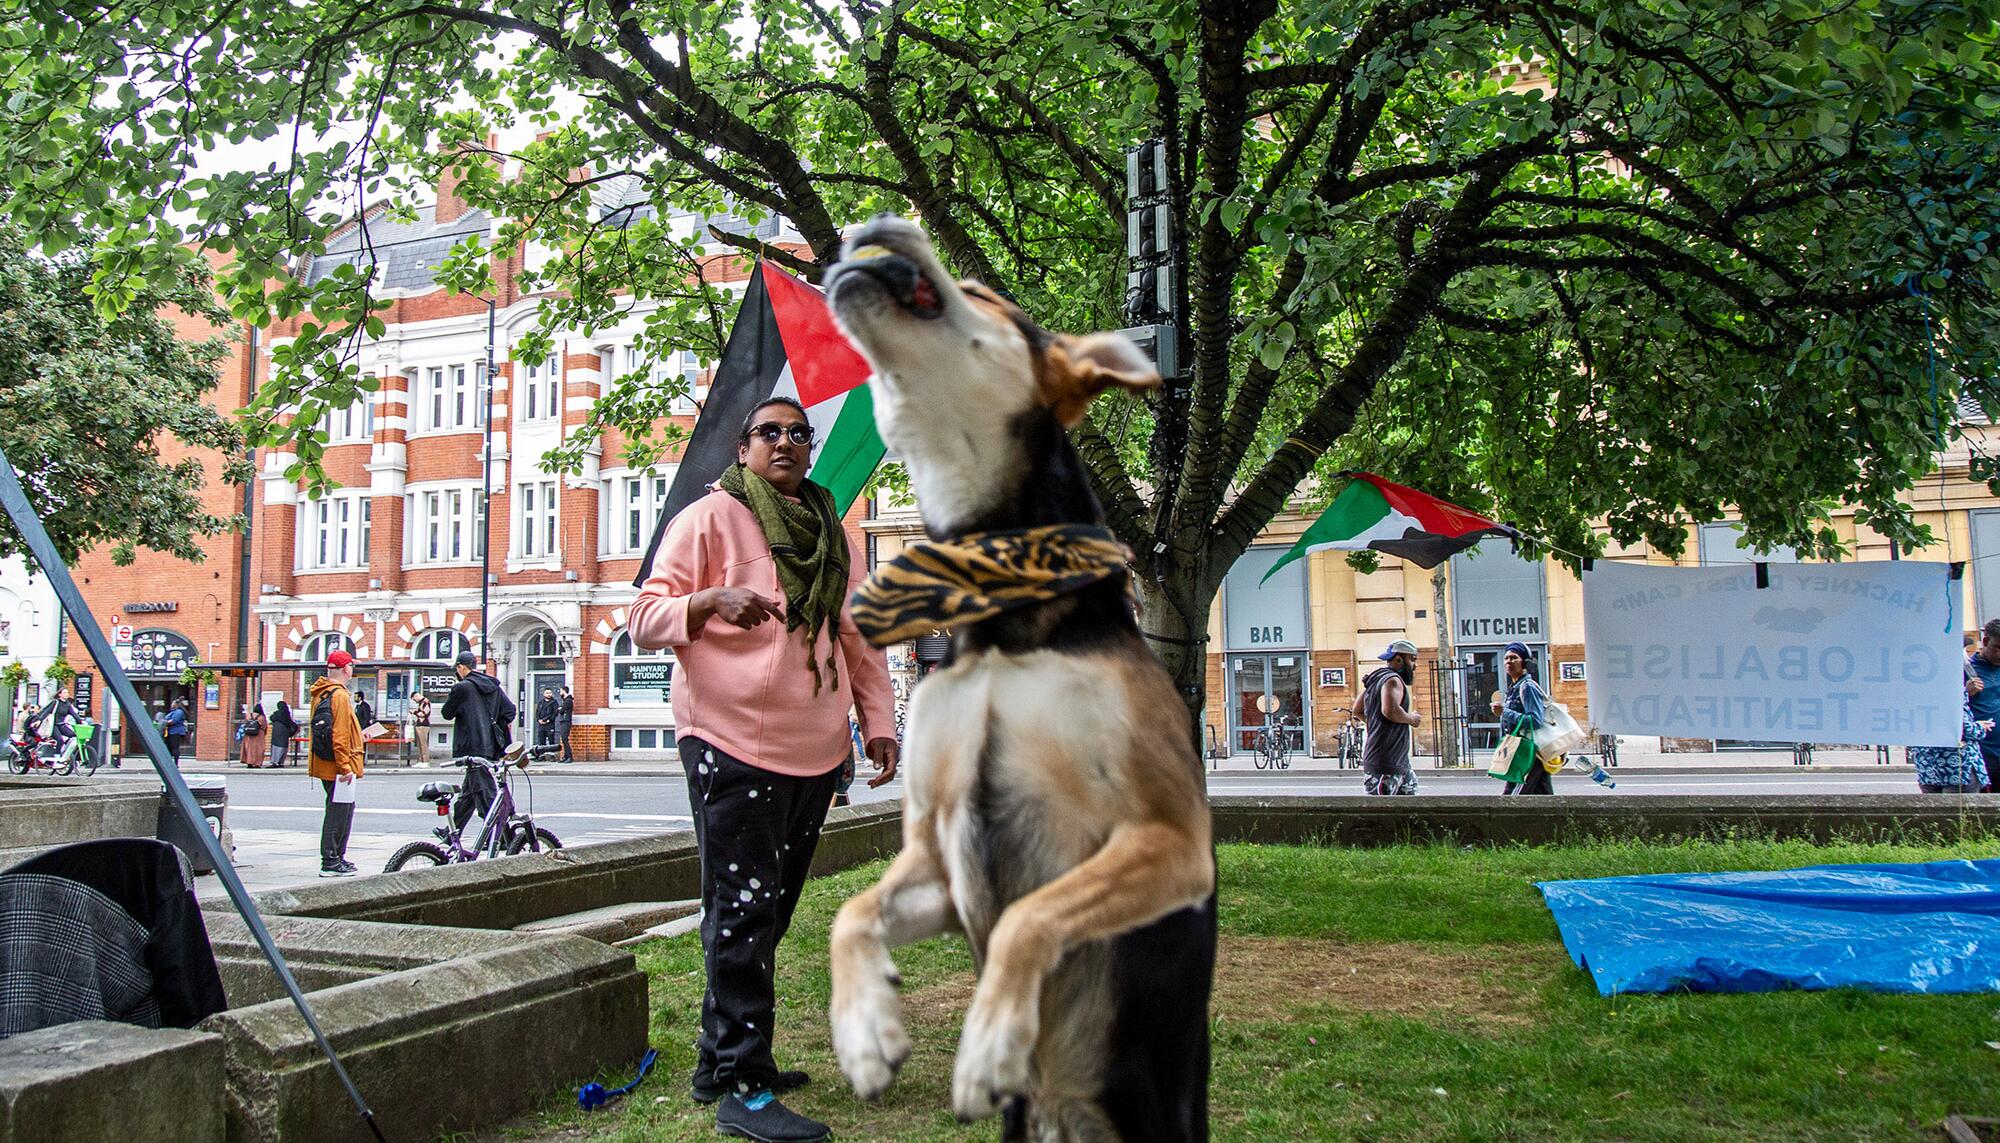 Acampada Palestina Hackney en Londres